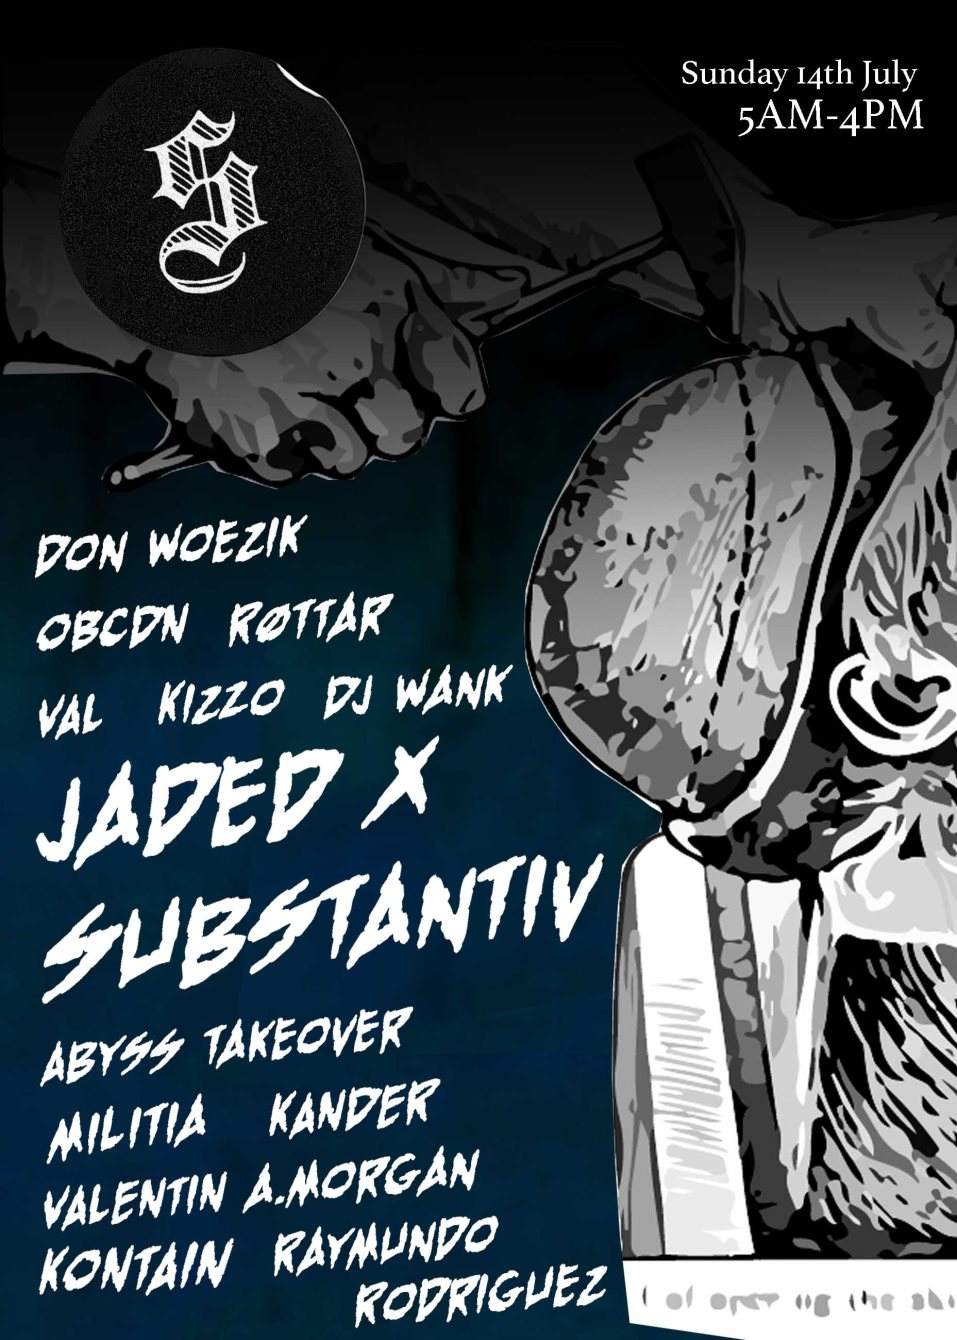 Jaded x Substantiv: OBCDN, Røttar, Don Woezik, DJ Wank, Val, Kizzo - Página trasera